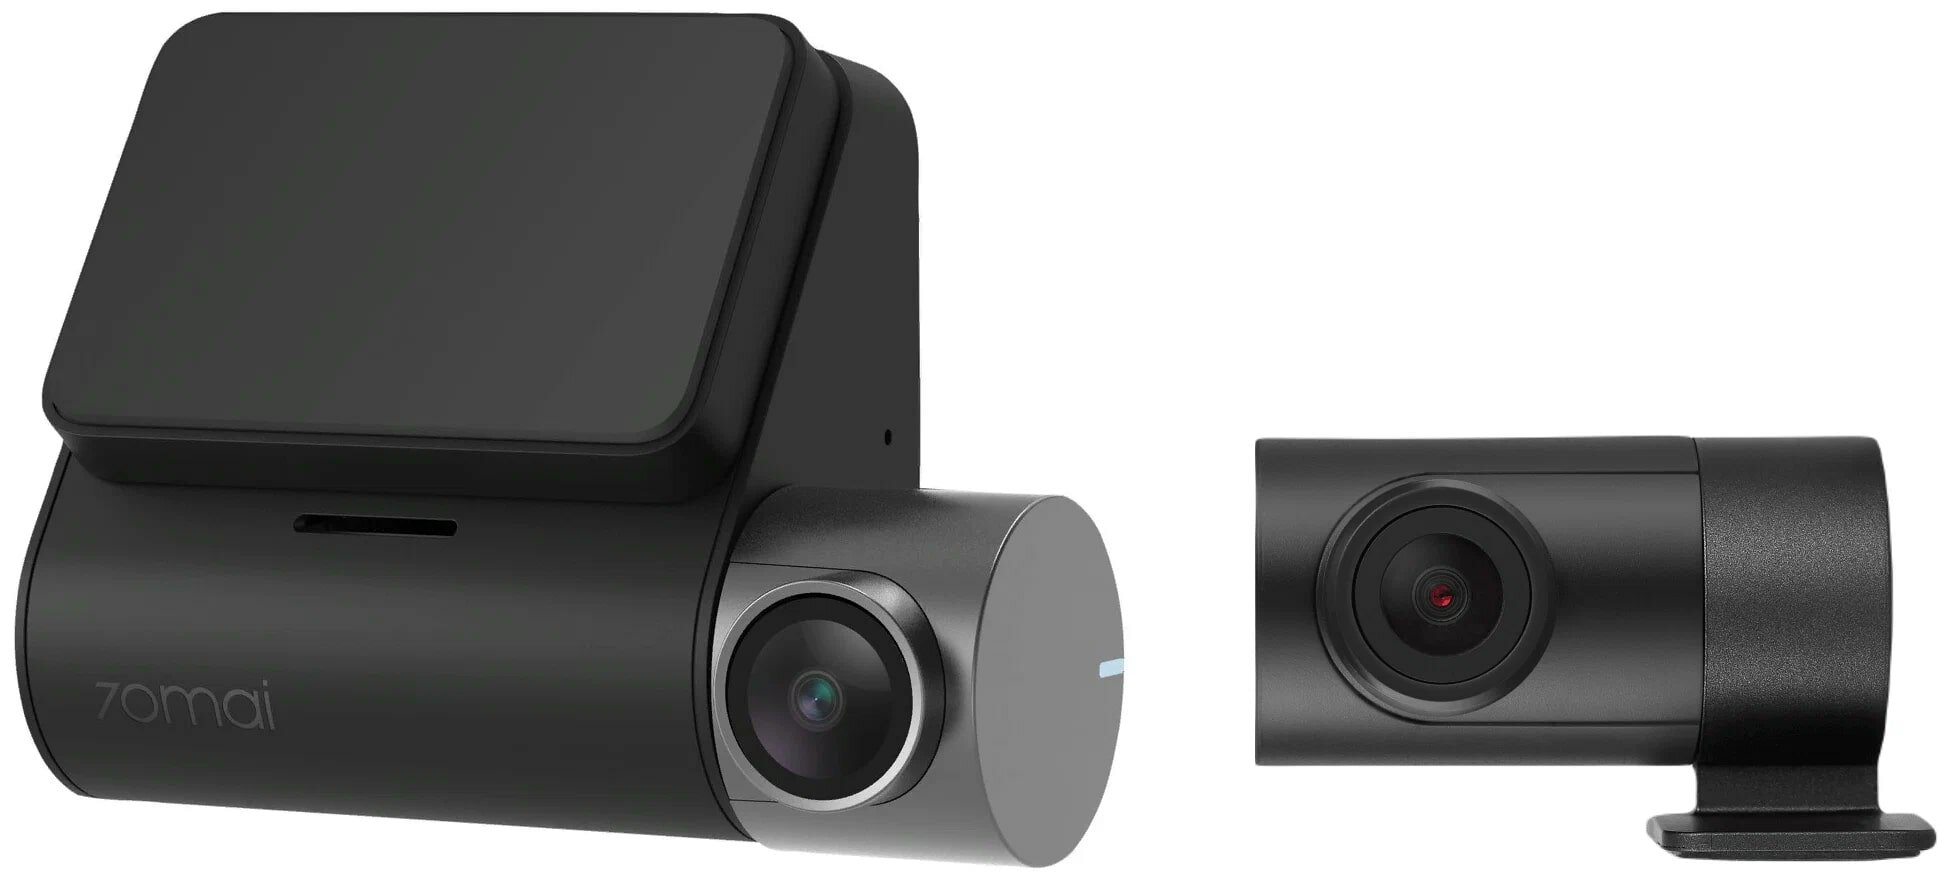 Видеорегистратор 70mai A500S Pro Plus+, с задней камерой, черный